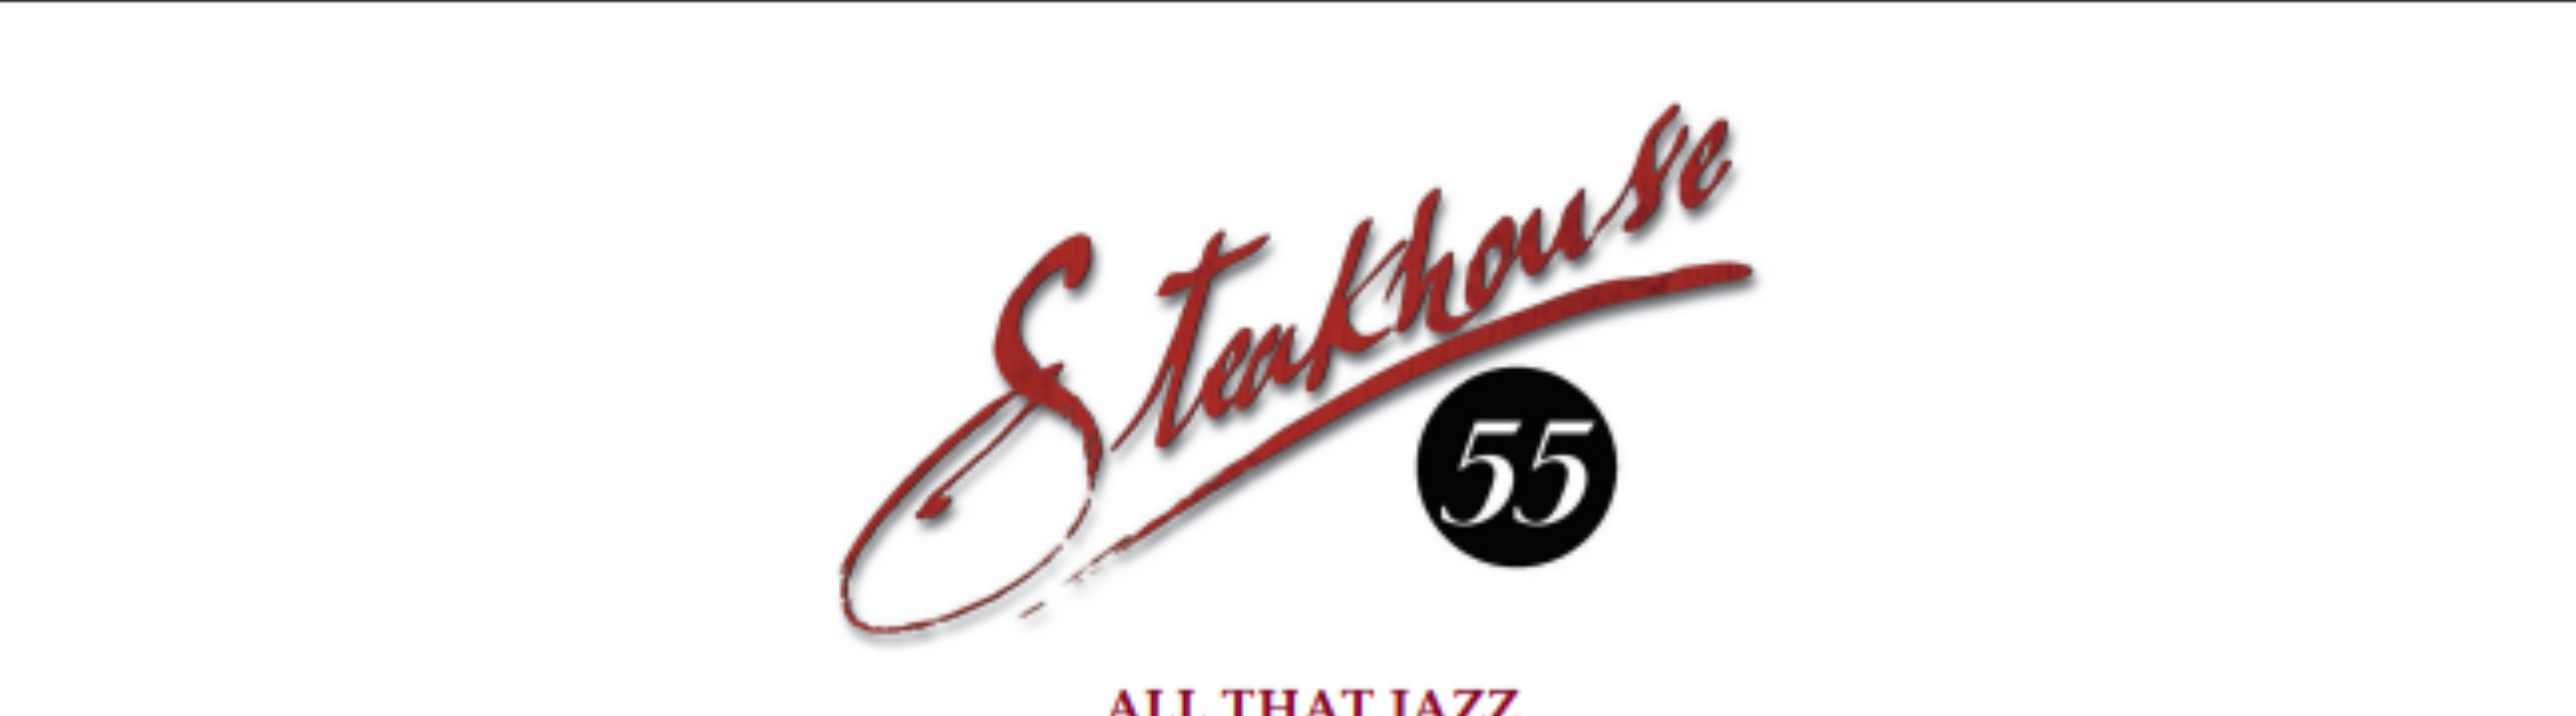 Is Steakhouse 55 the Best Kept Breakfast Secret?